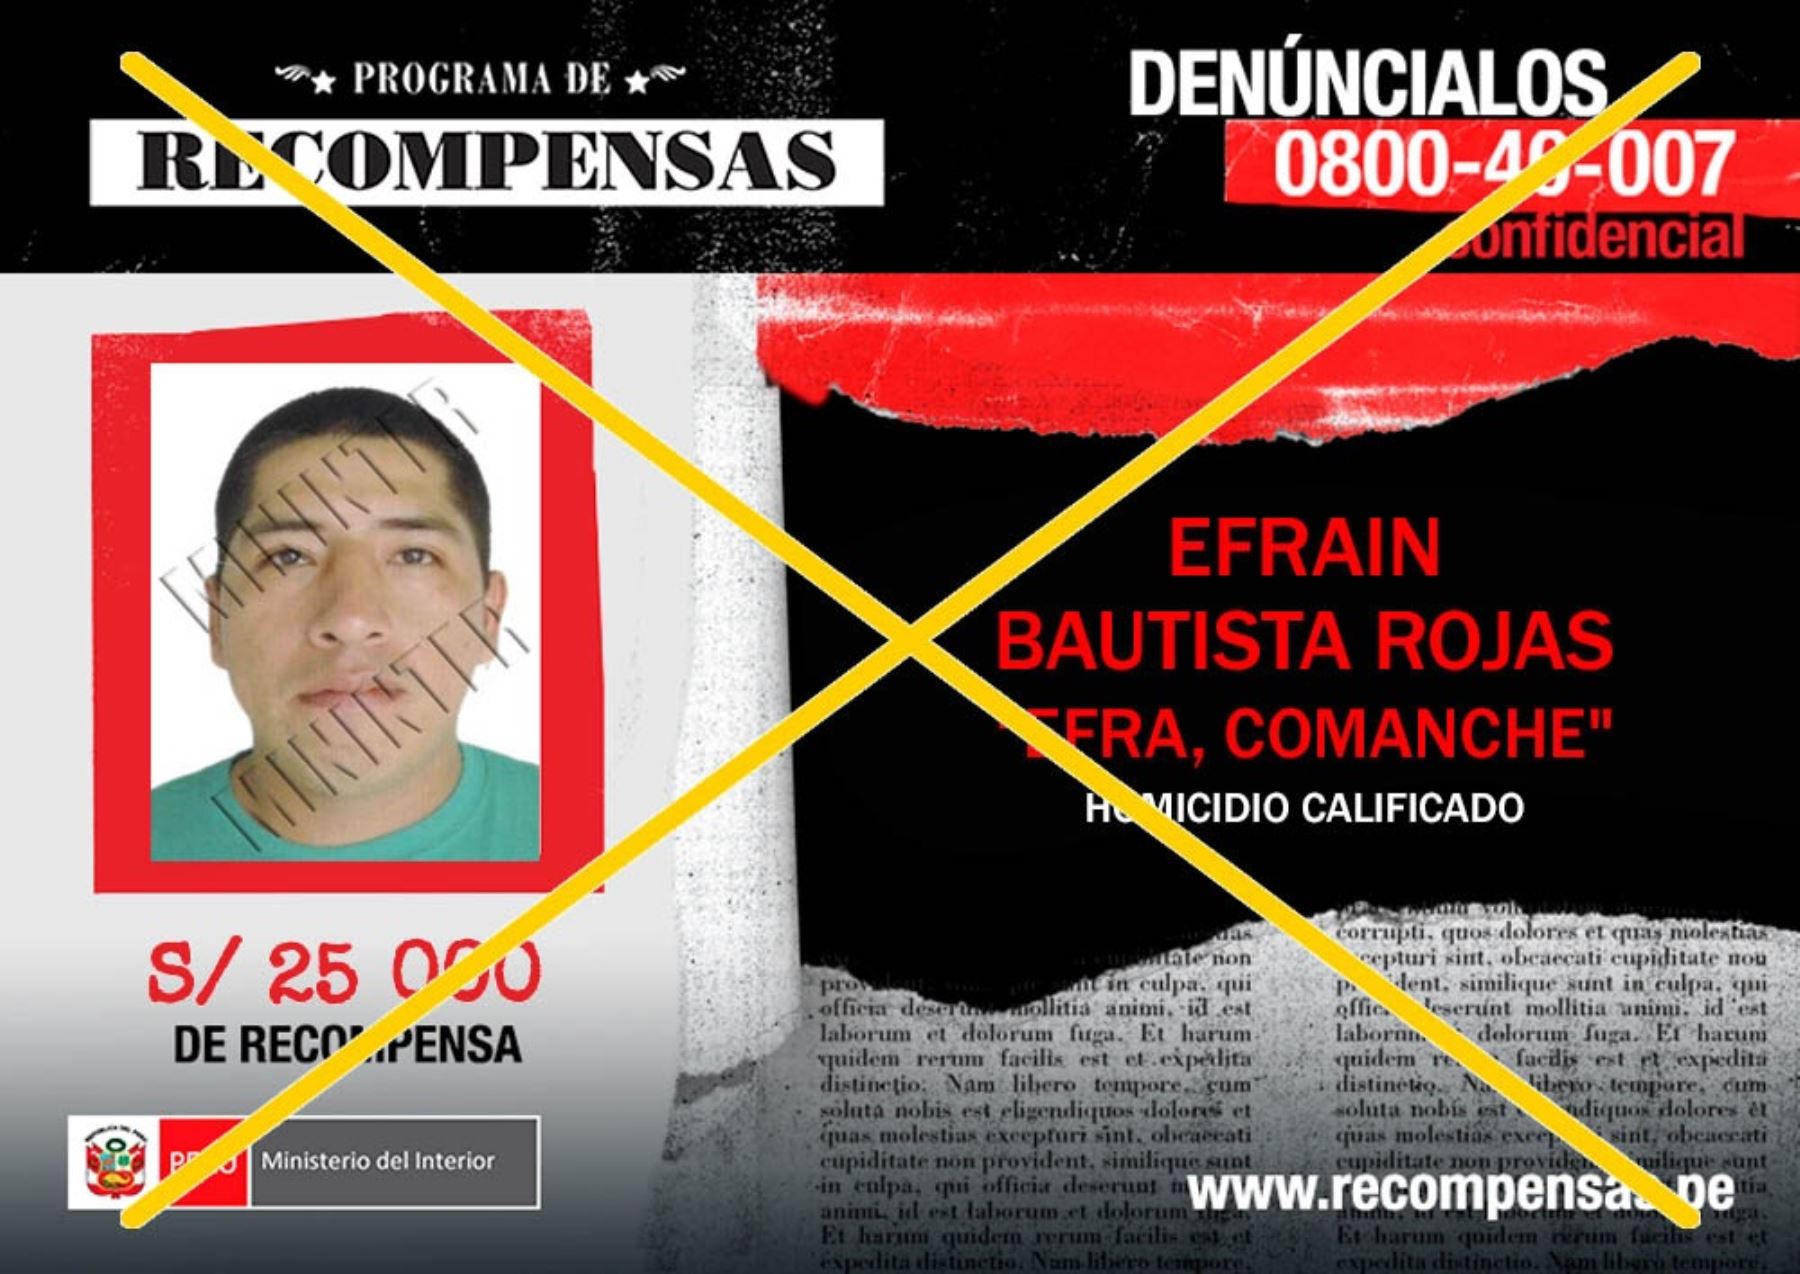 Efrain Bautista Rojas (35), requisitoriado por el delito de homicidio calificado, fue capturado en el centro Poblado Quisto Valle, distrito cusqueño de Pichari – La Convención